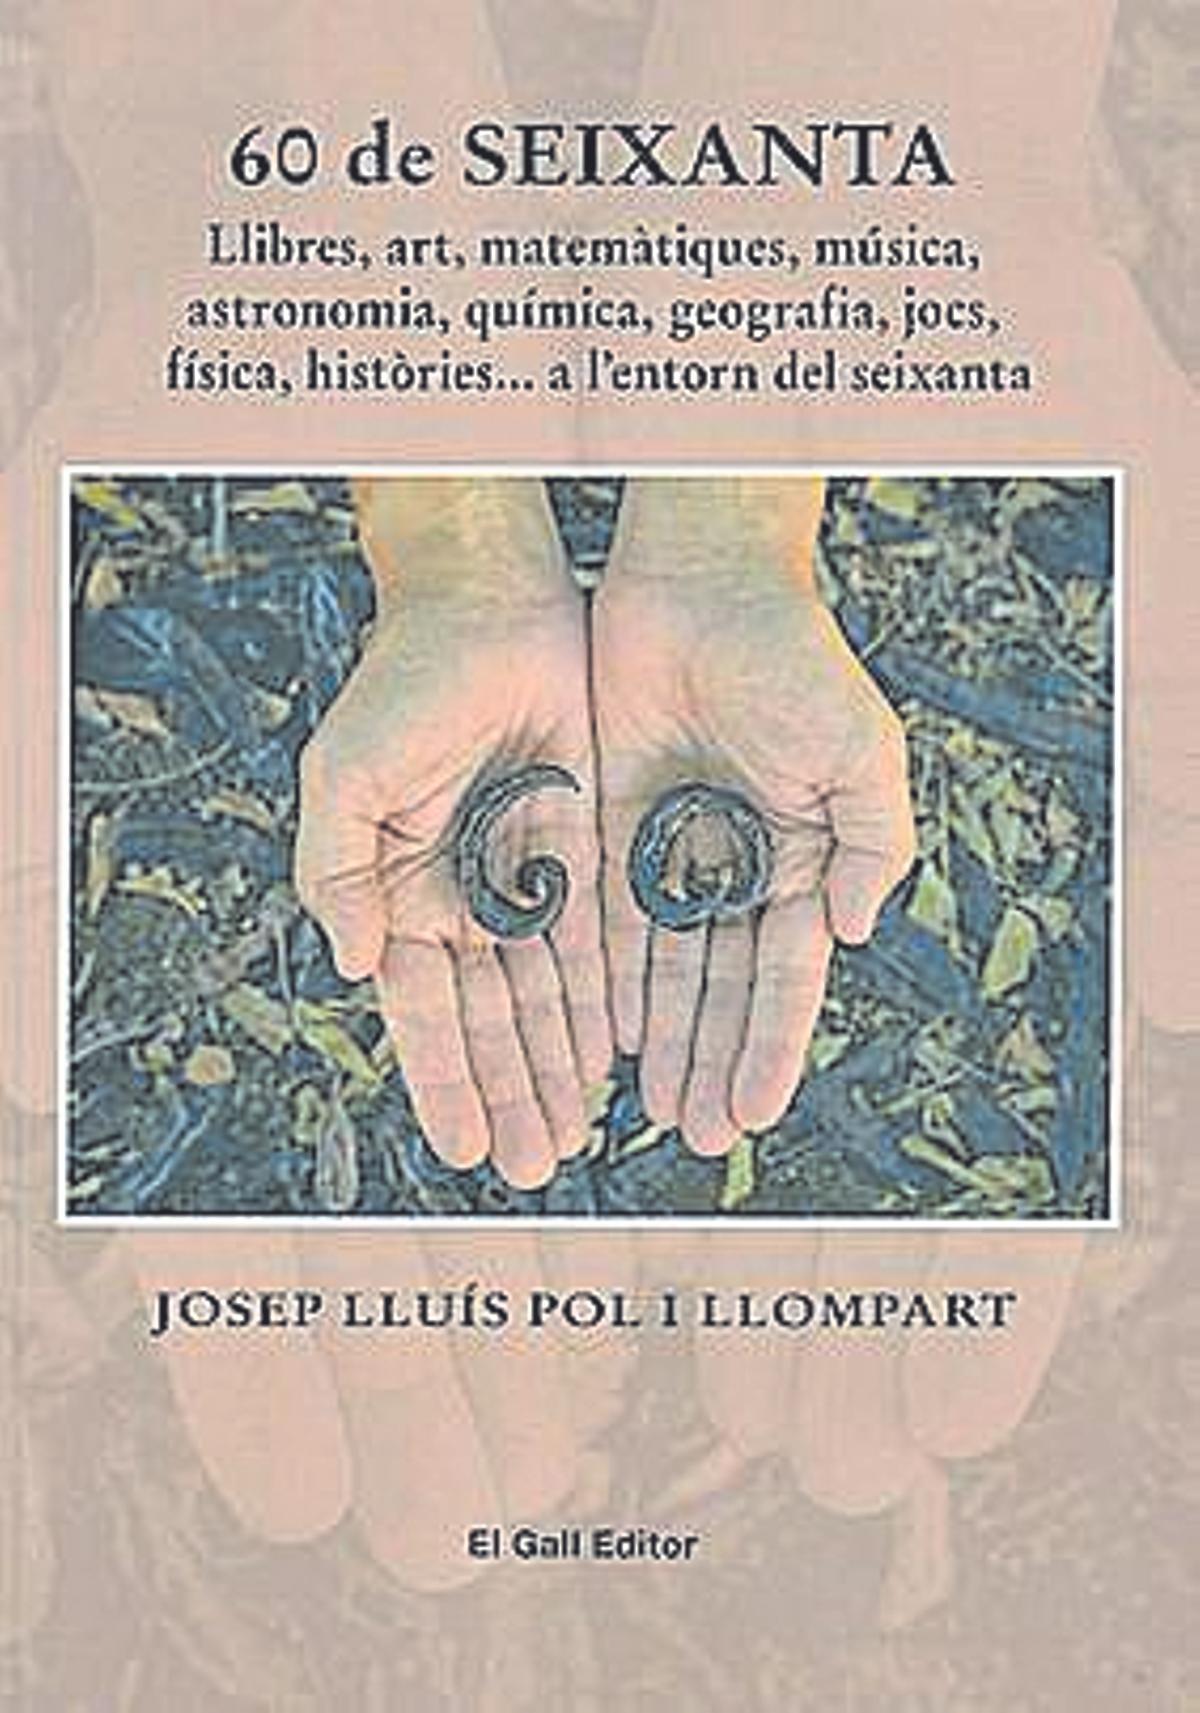 Portada del llibre '60 de SEIXANTA' de Josep Lluis Pol Llompart